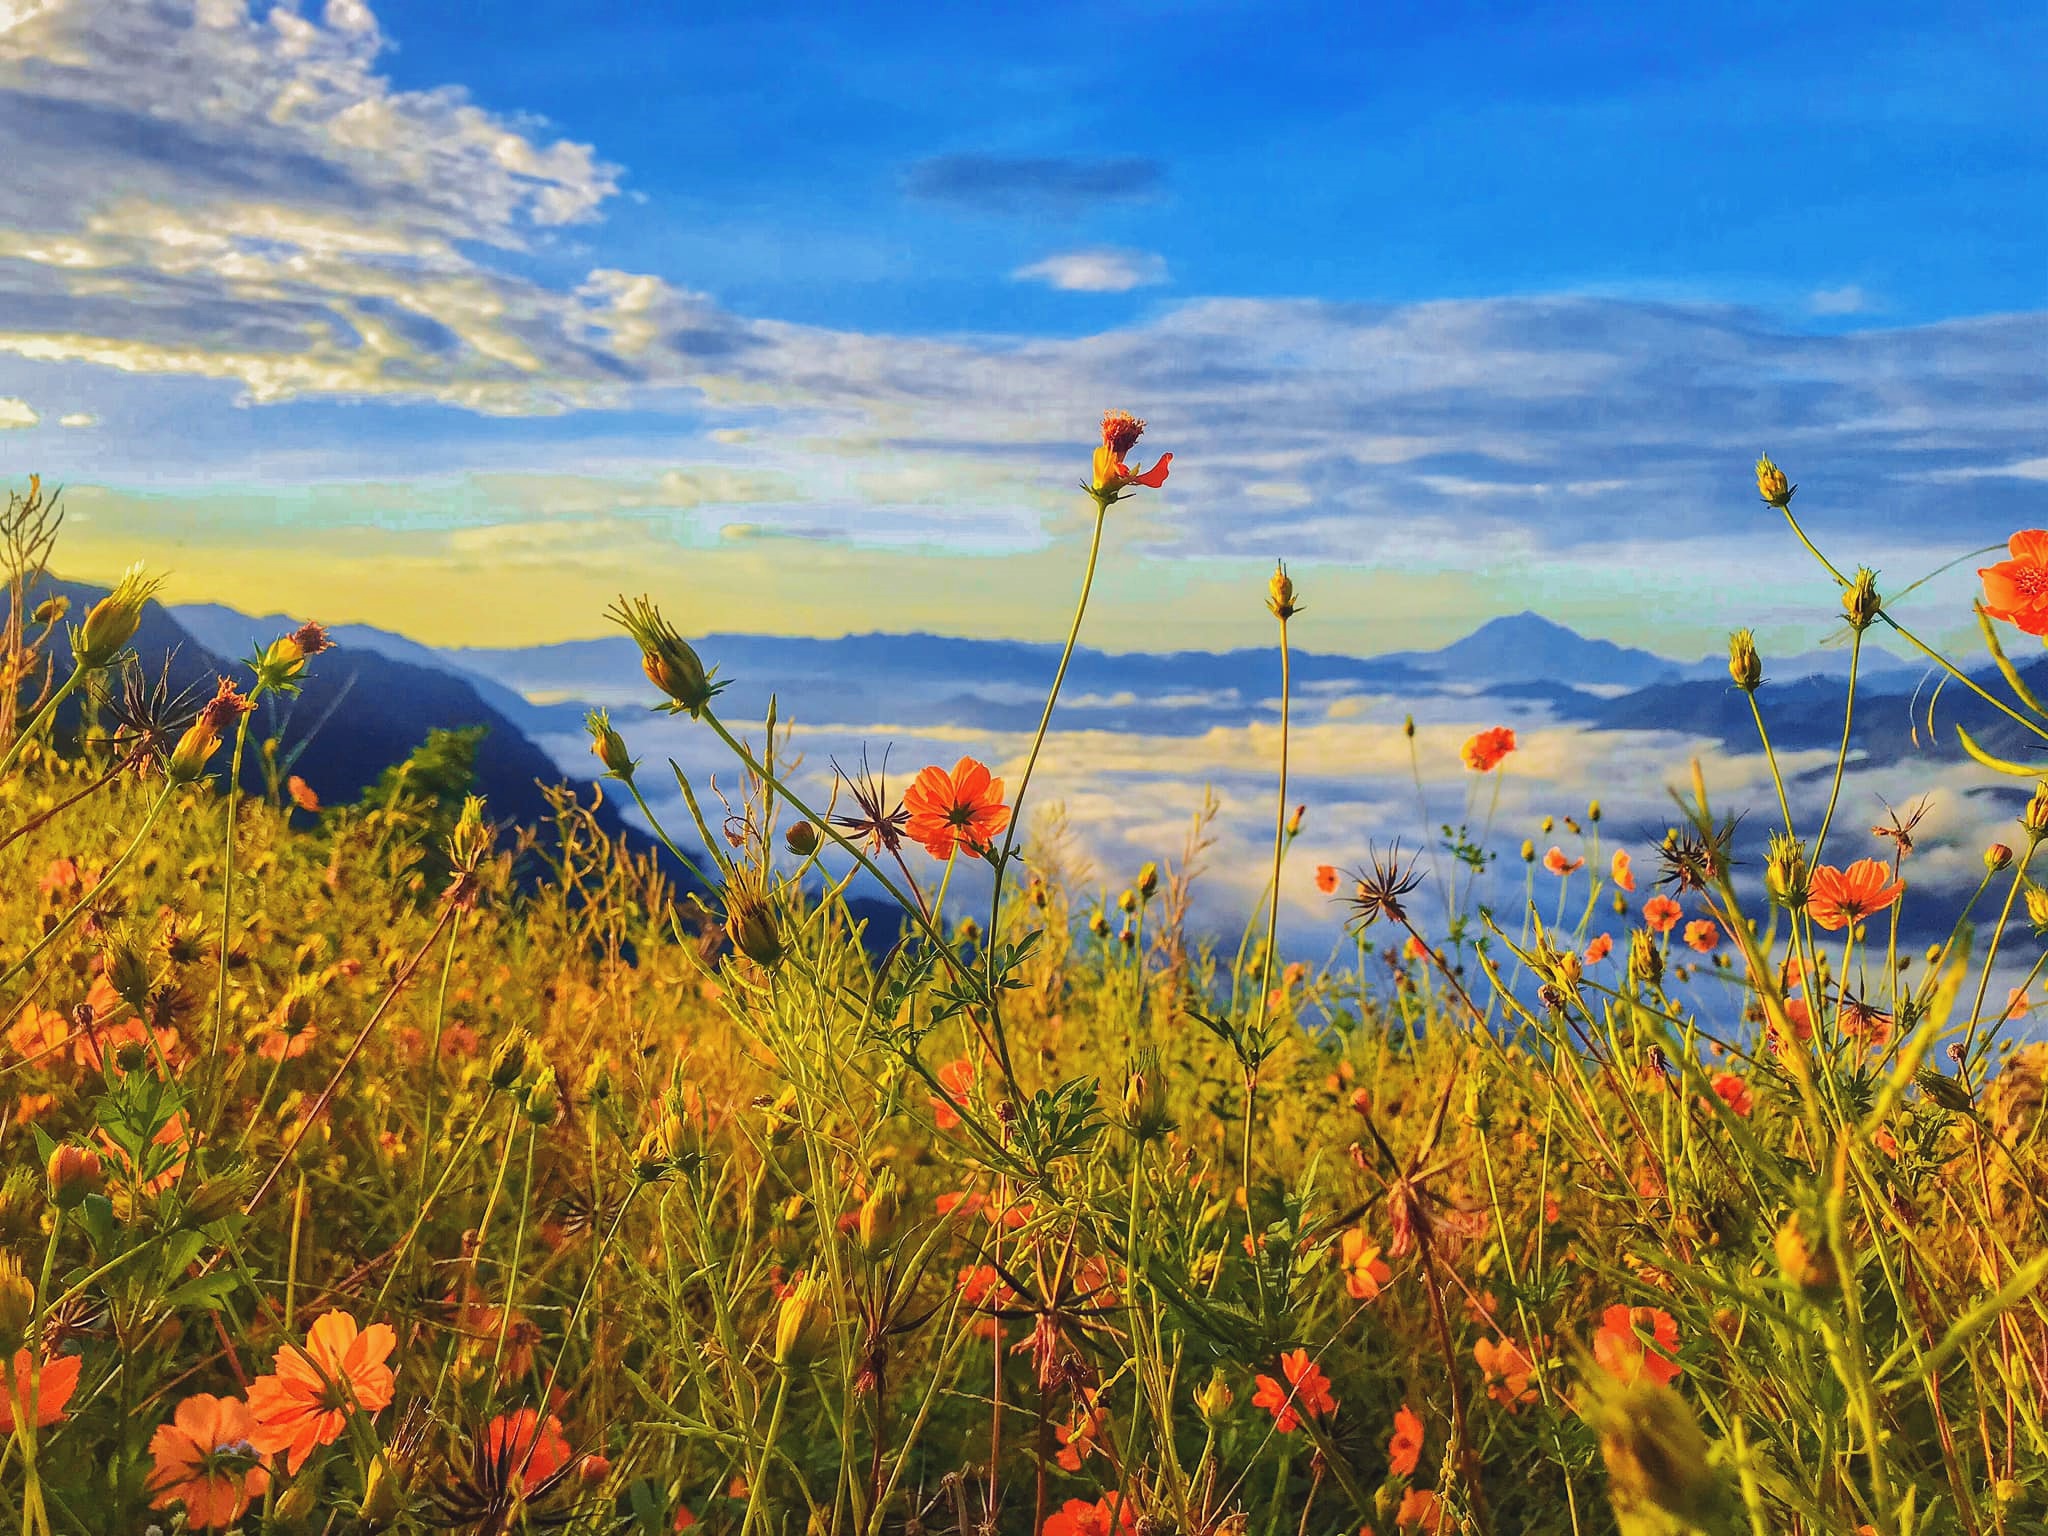 Cánh đồng hoa dại Hang Kia: Nếu bạn muốn trải nghiệm một không gian hoang sơ, thoáng đãng với những cánh đồng hoa dại thơ mộng, Hang Kia chắc chắn sẽ là một địa điểm lý tưởng cho bạn. Điểm đặc biệt ở đây là sự kết hợp giữa những bông hoa hoang dã và bầu trời xanh biếc, tạo nên một cảnh quan đẹp mê hồn.